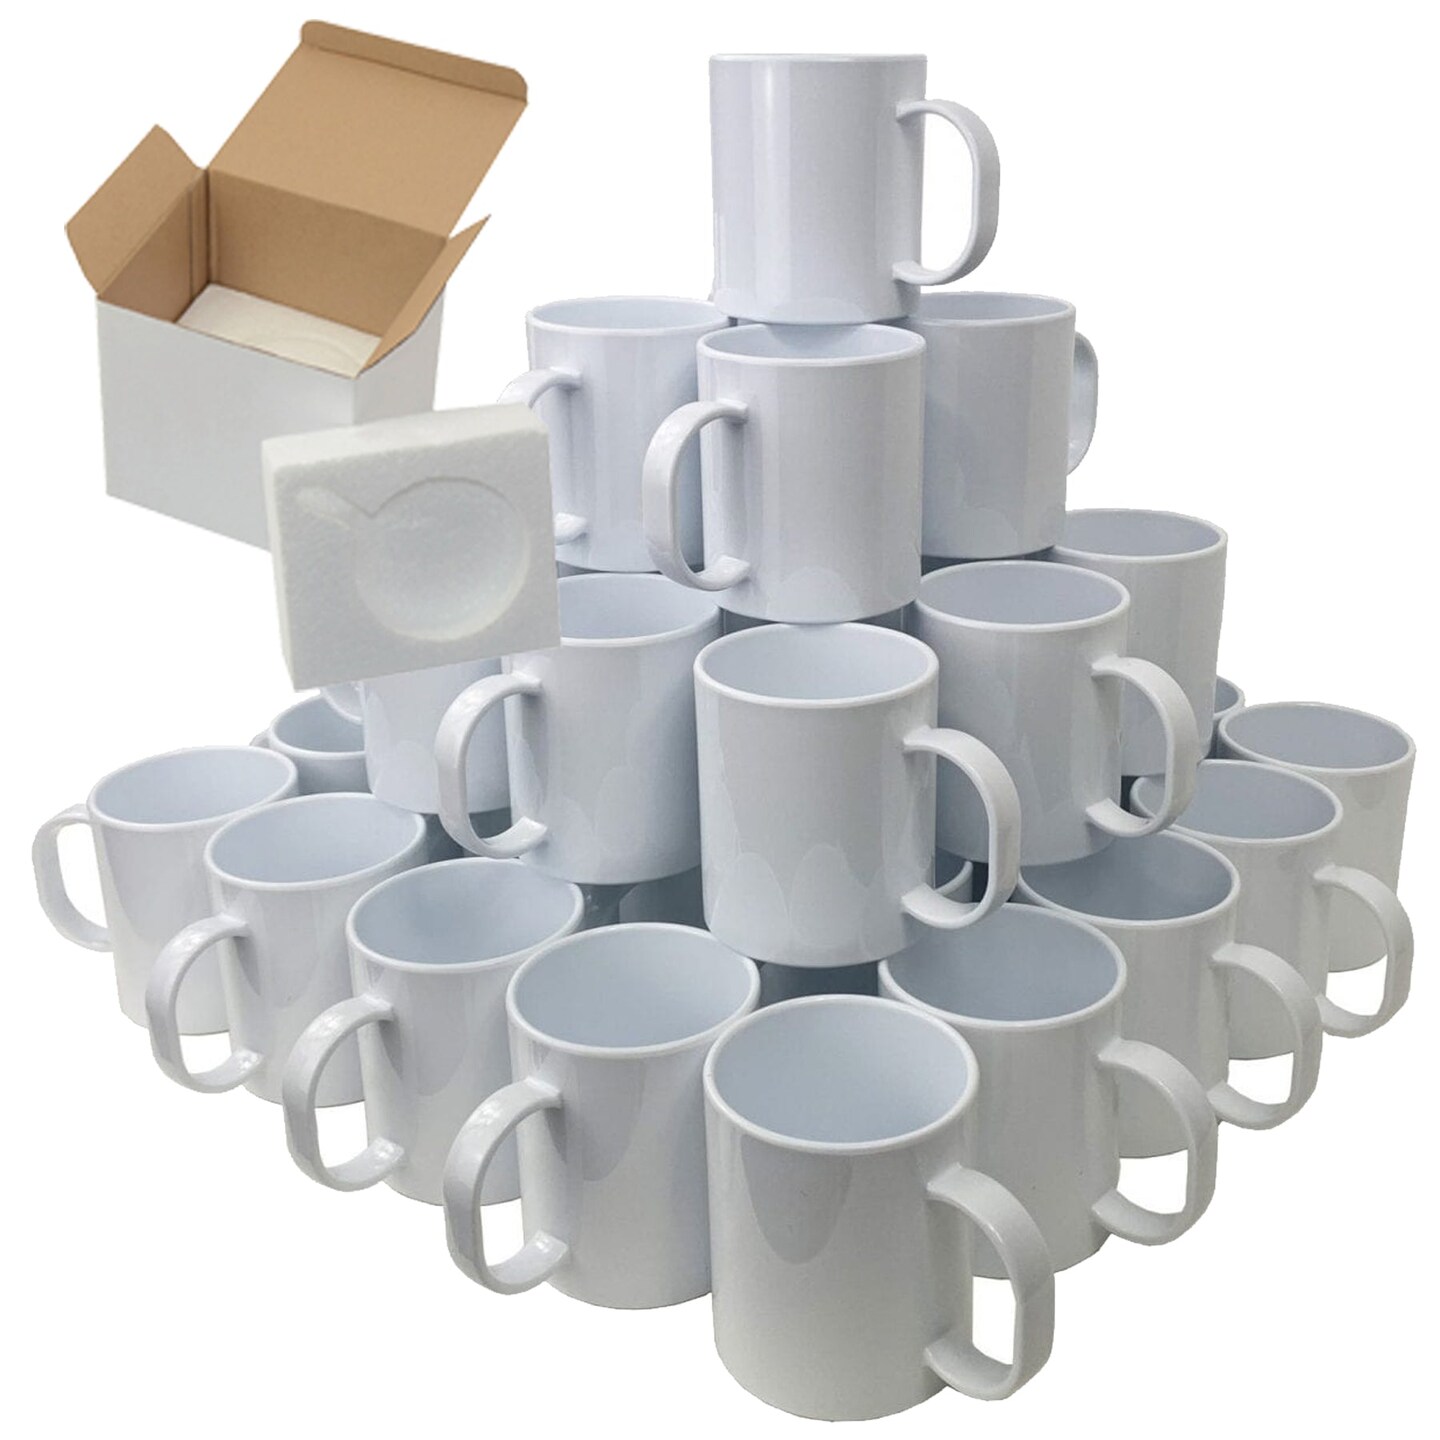 Premium 15oz Gold Rim and Handle Sublimation Mugs - Set of 12, Clouded Mug  Shipping Boxes